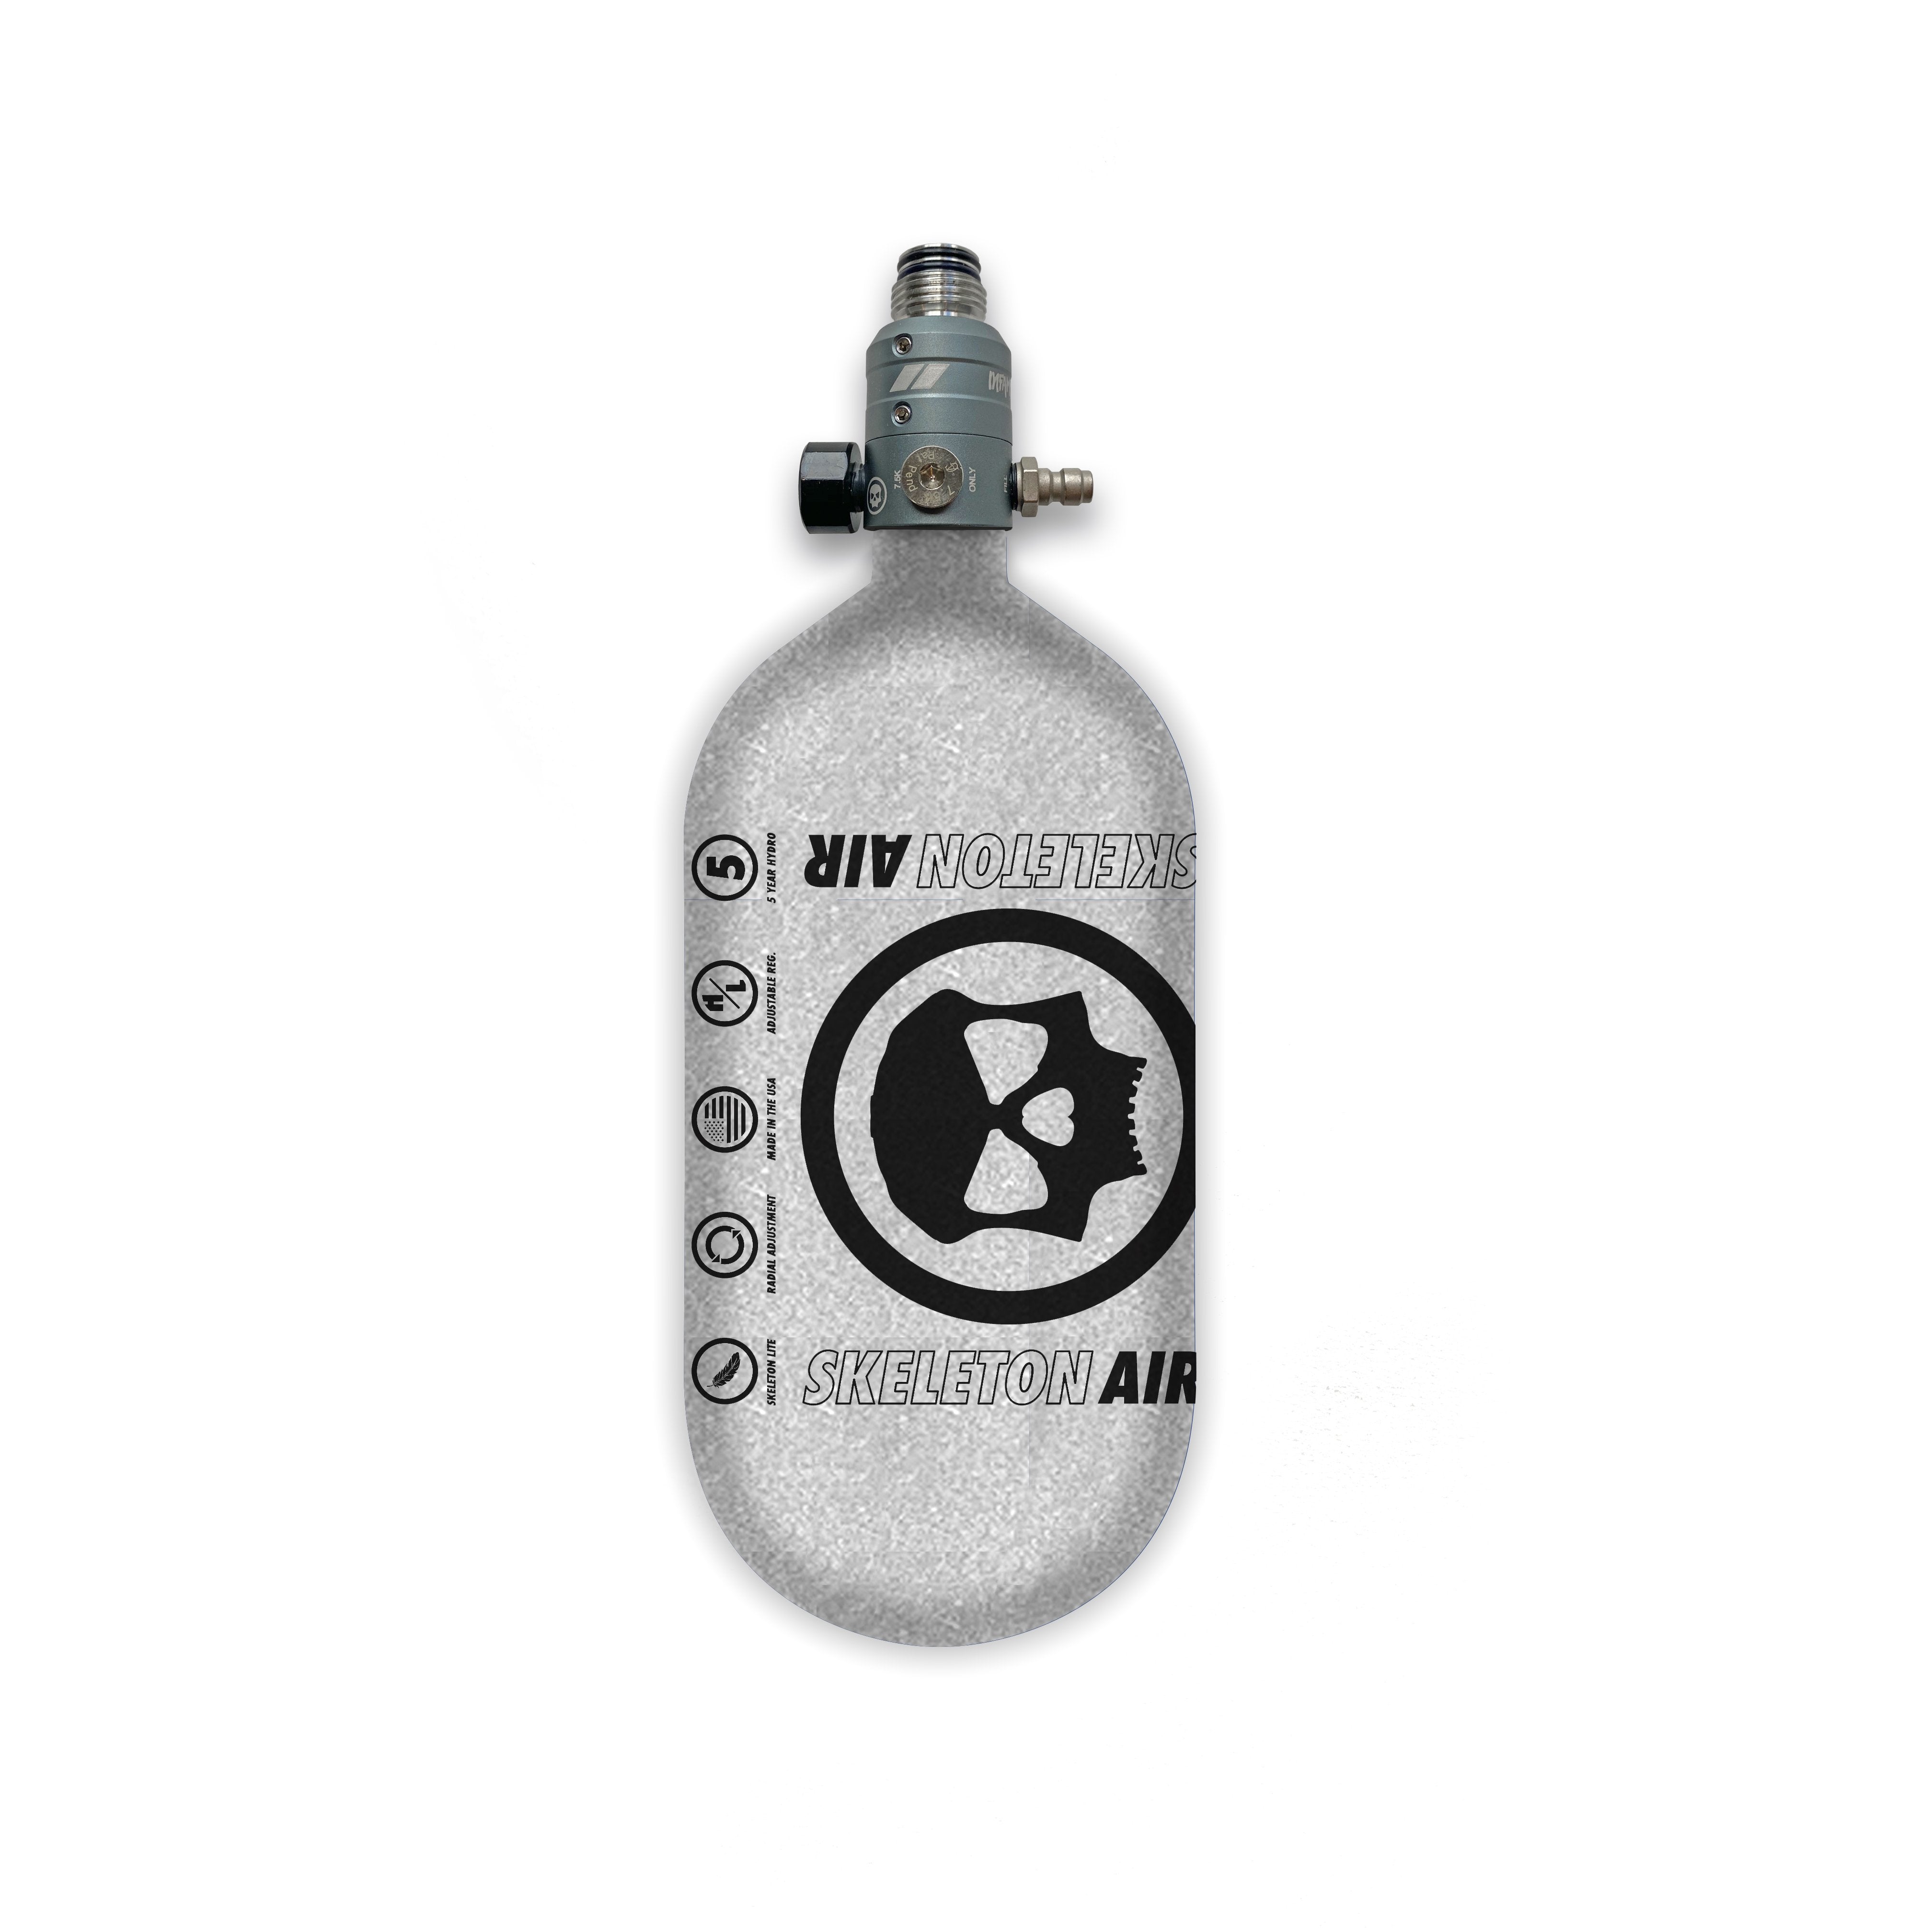 Infamous Skeleton Air "Hyperlight" Paintball Tank -Bottle Only-- Silver / Black - 80/4500 PSI